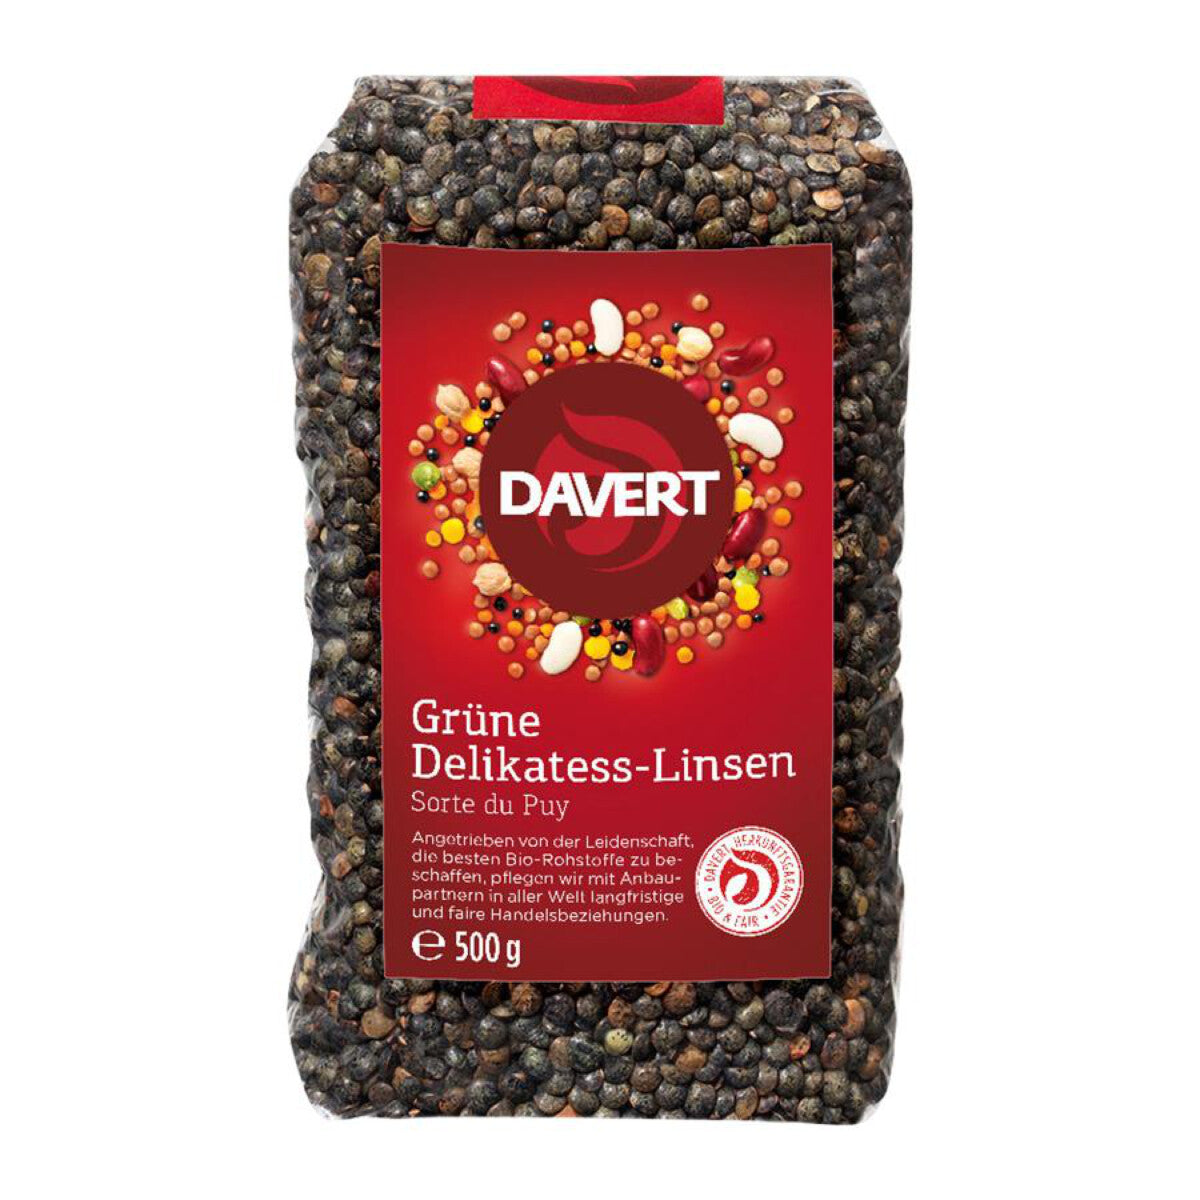 DAVERT Grüne Delikatess-Linsen - 500 g